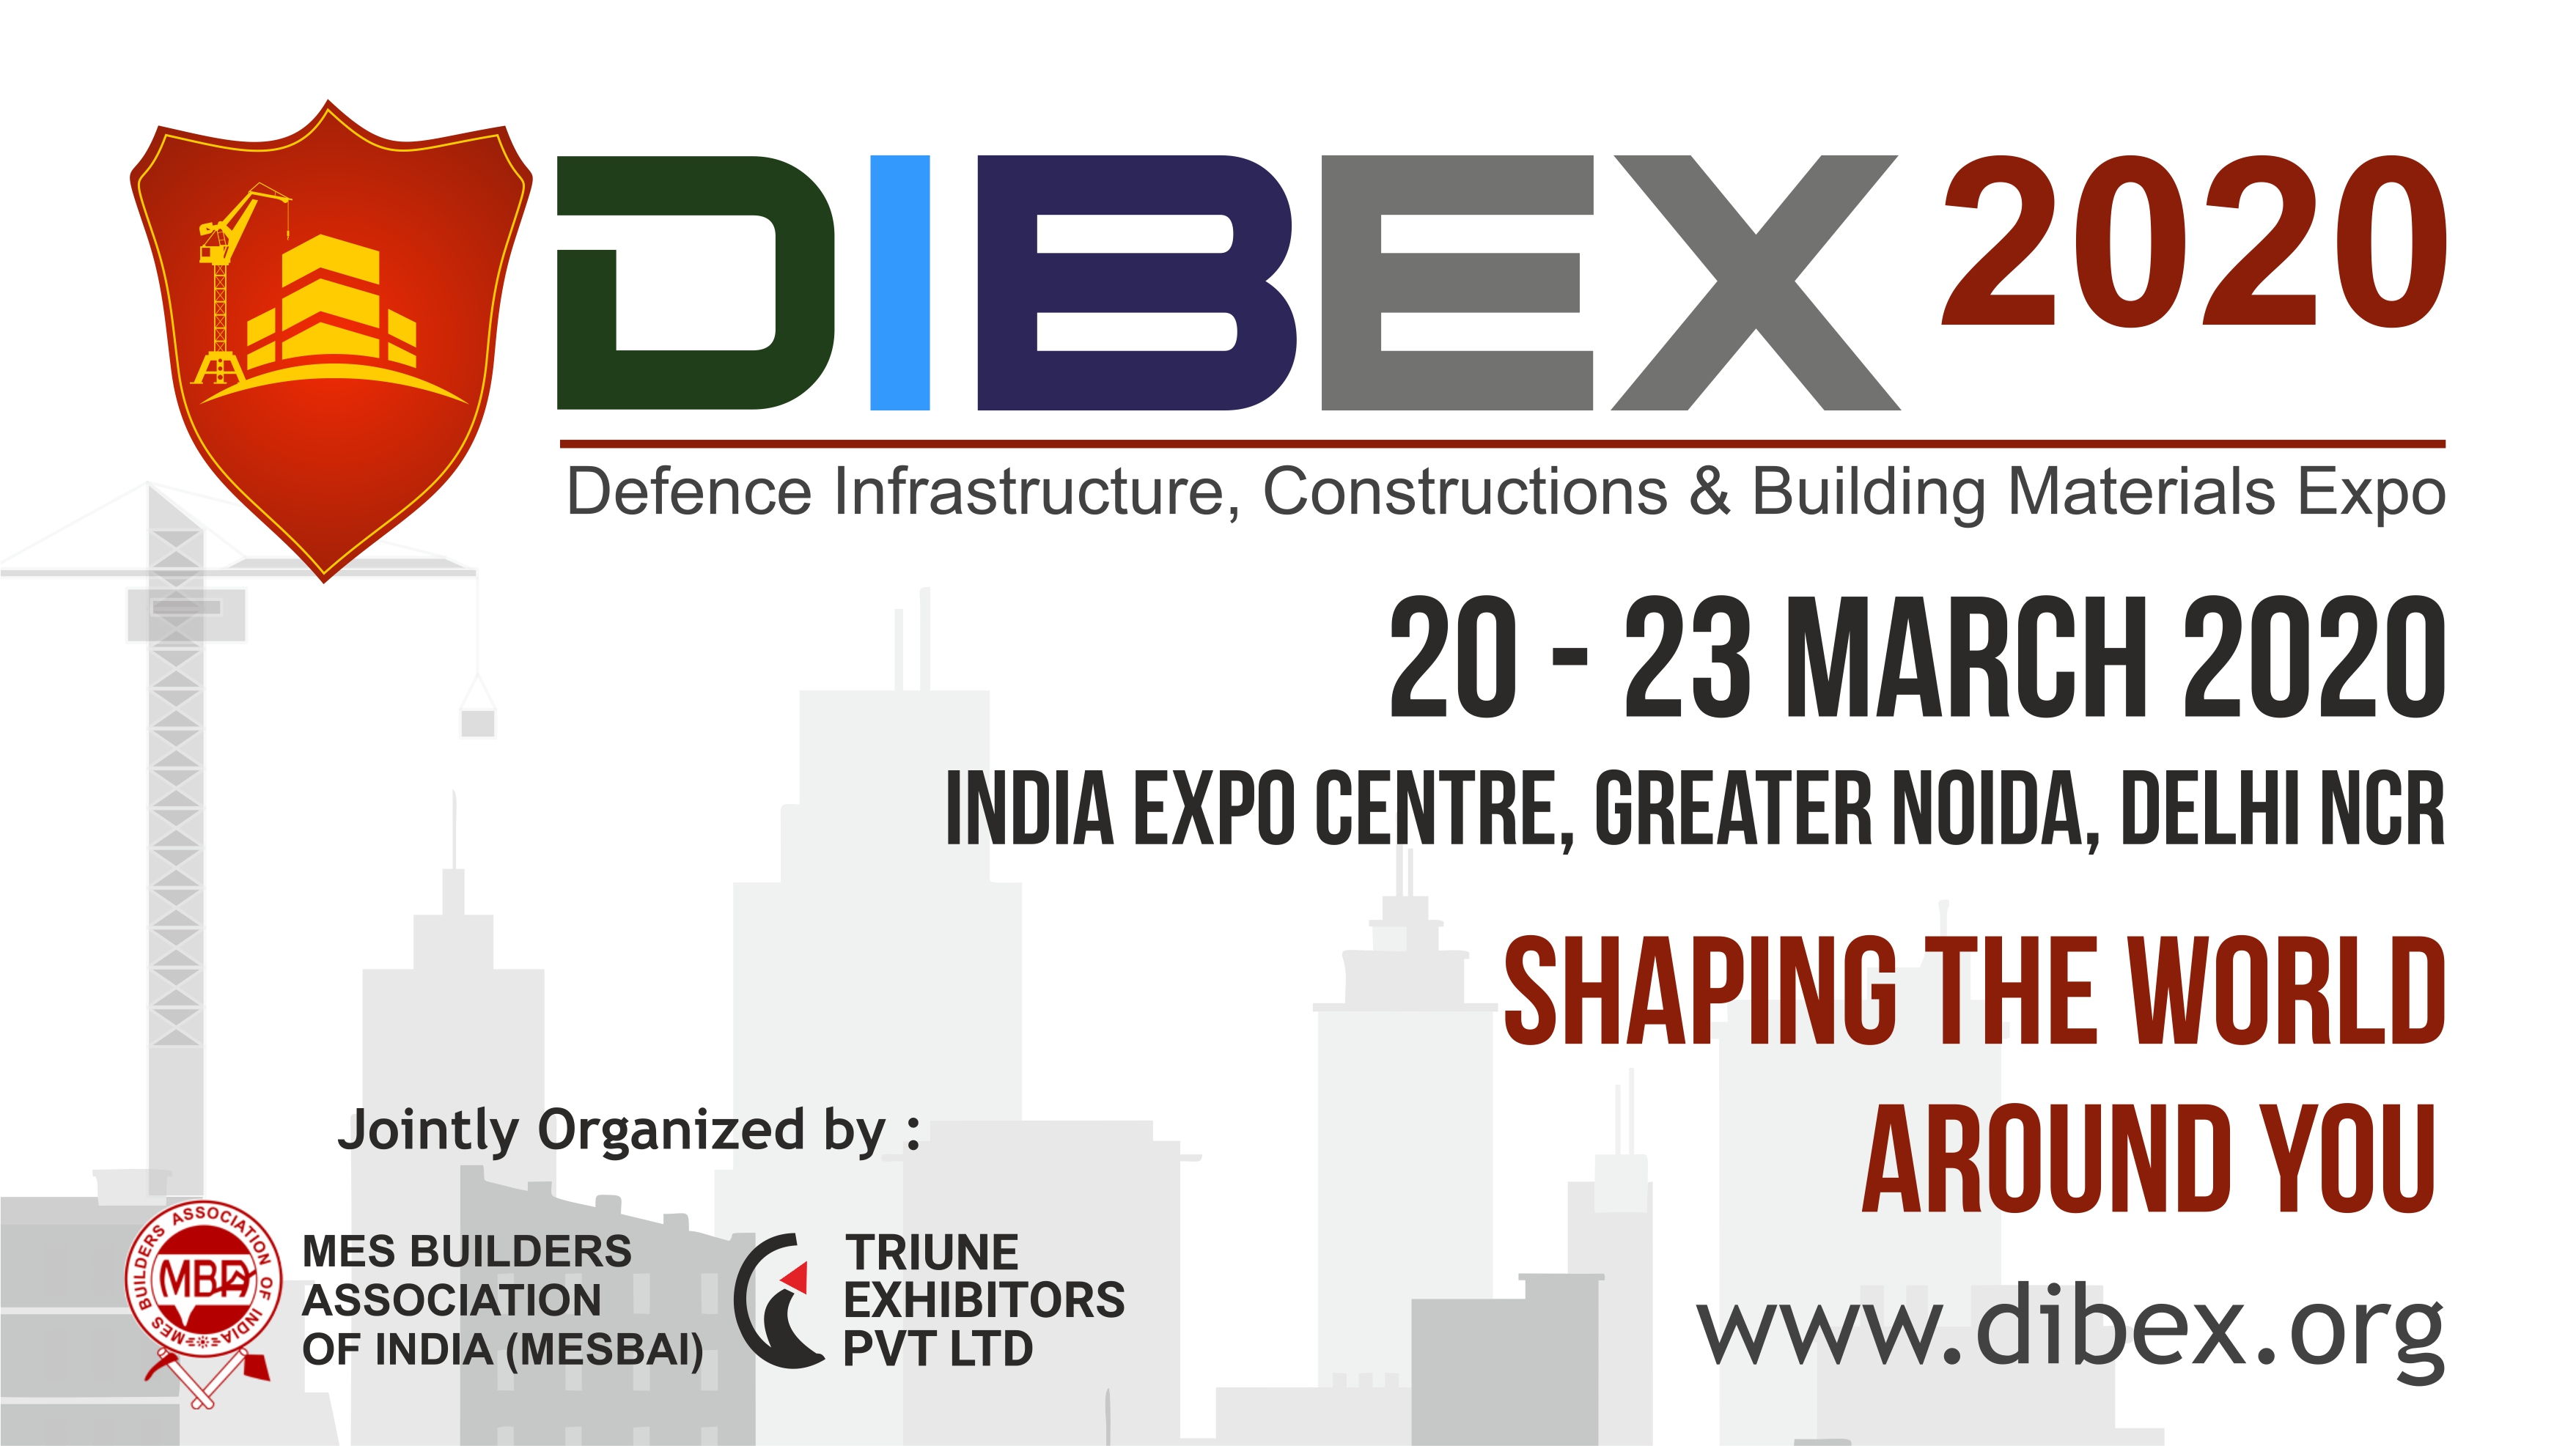 DIBEX-2020 Exhibition, Gautam Buddh Nagar, Uttar Pradesh, India